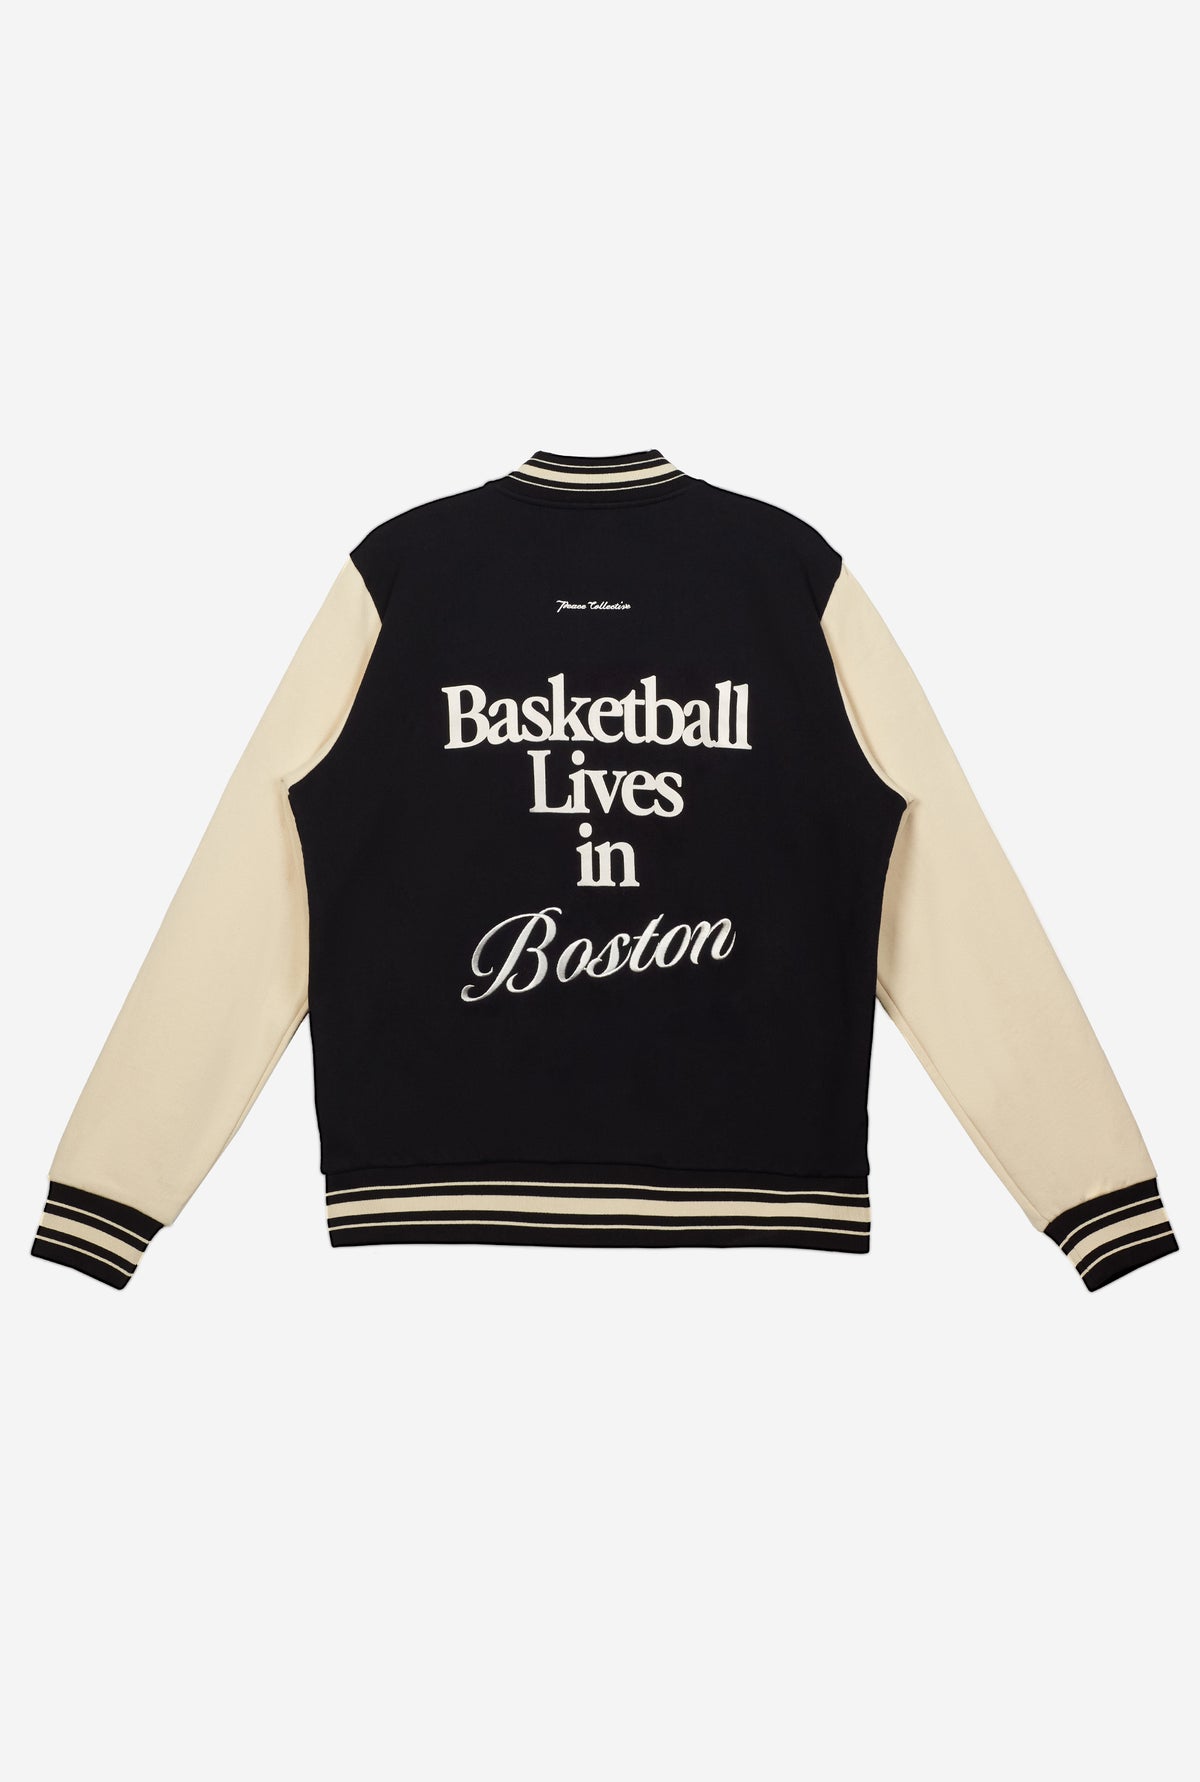 Basketball Lives in Boston Letterman Jacket - Black/Cream